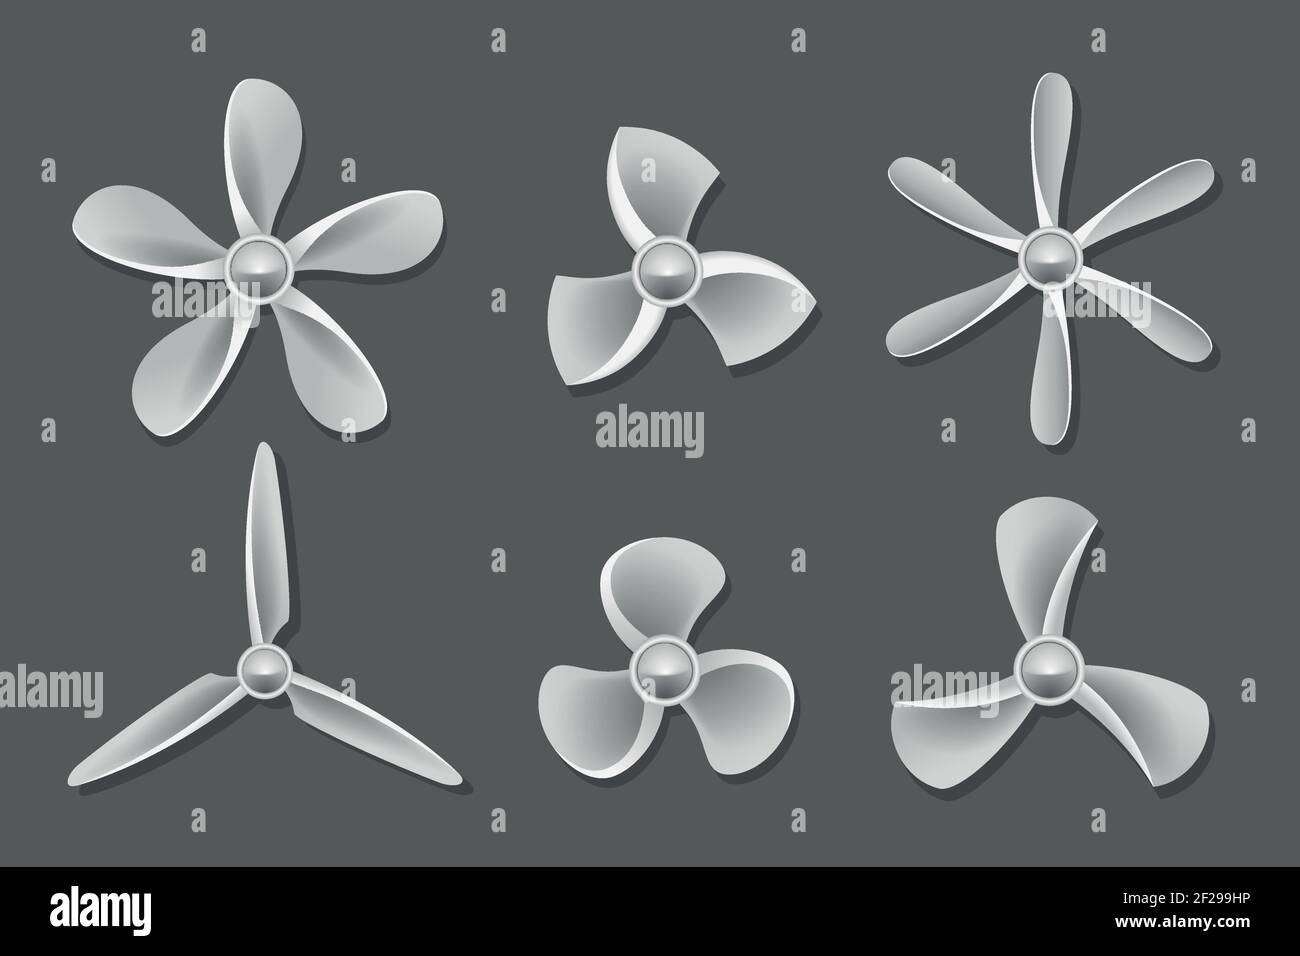 Propeller icons vector. Propeller air, ventilator propeller, fan and blade, equipment propeller blower illustration Stock Vector